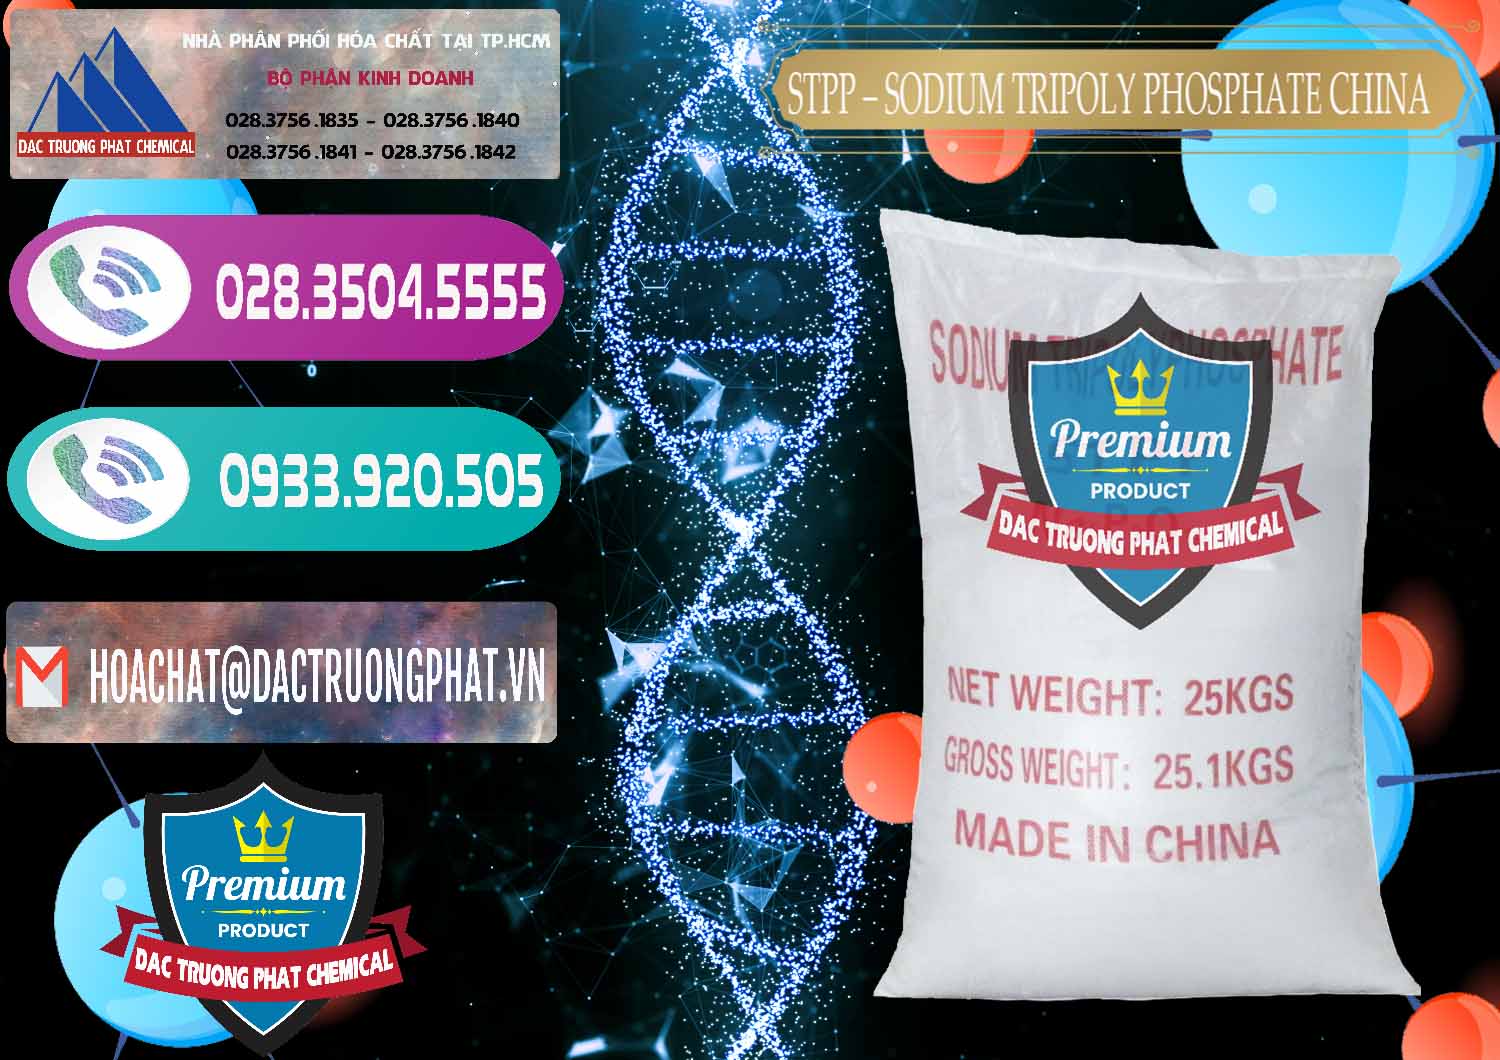 Đơn vị chuyên kinh doanh và bán Sodium Tripoly Phosphate - STPP 96% Chữ Đỏ Trung Quốc China - 0155 - Cty nhập khẩu & phân phối hóa chất tại TP.HCM - hoachatxulynuoc.com